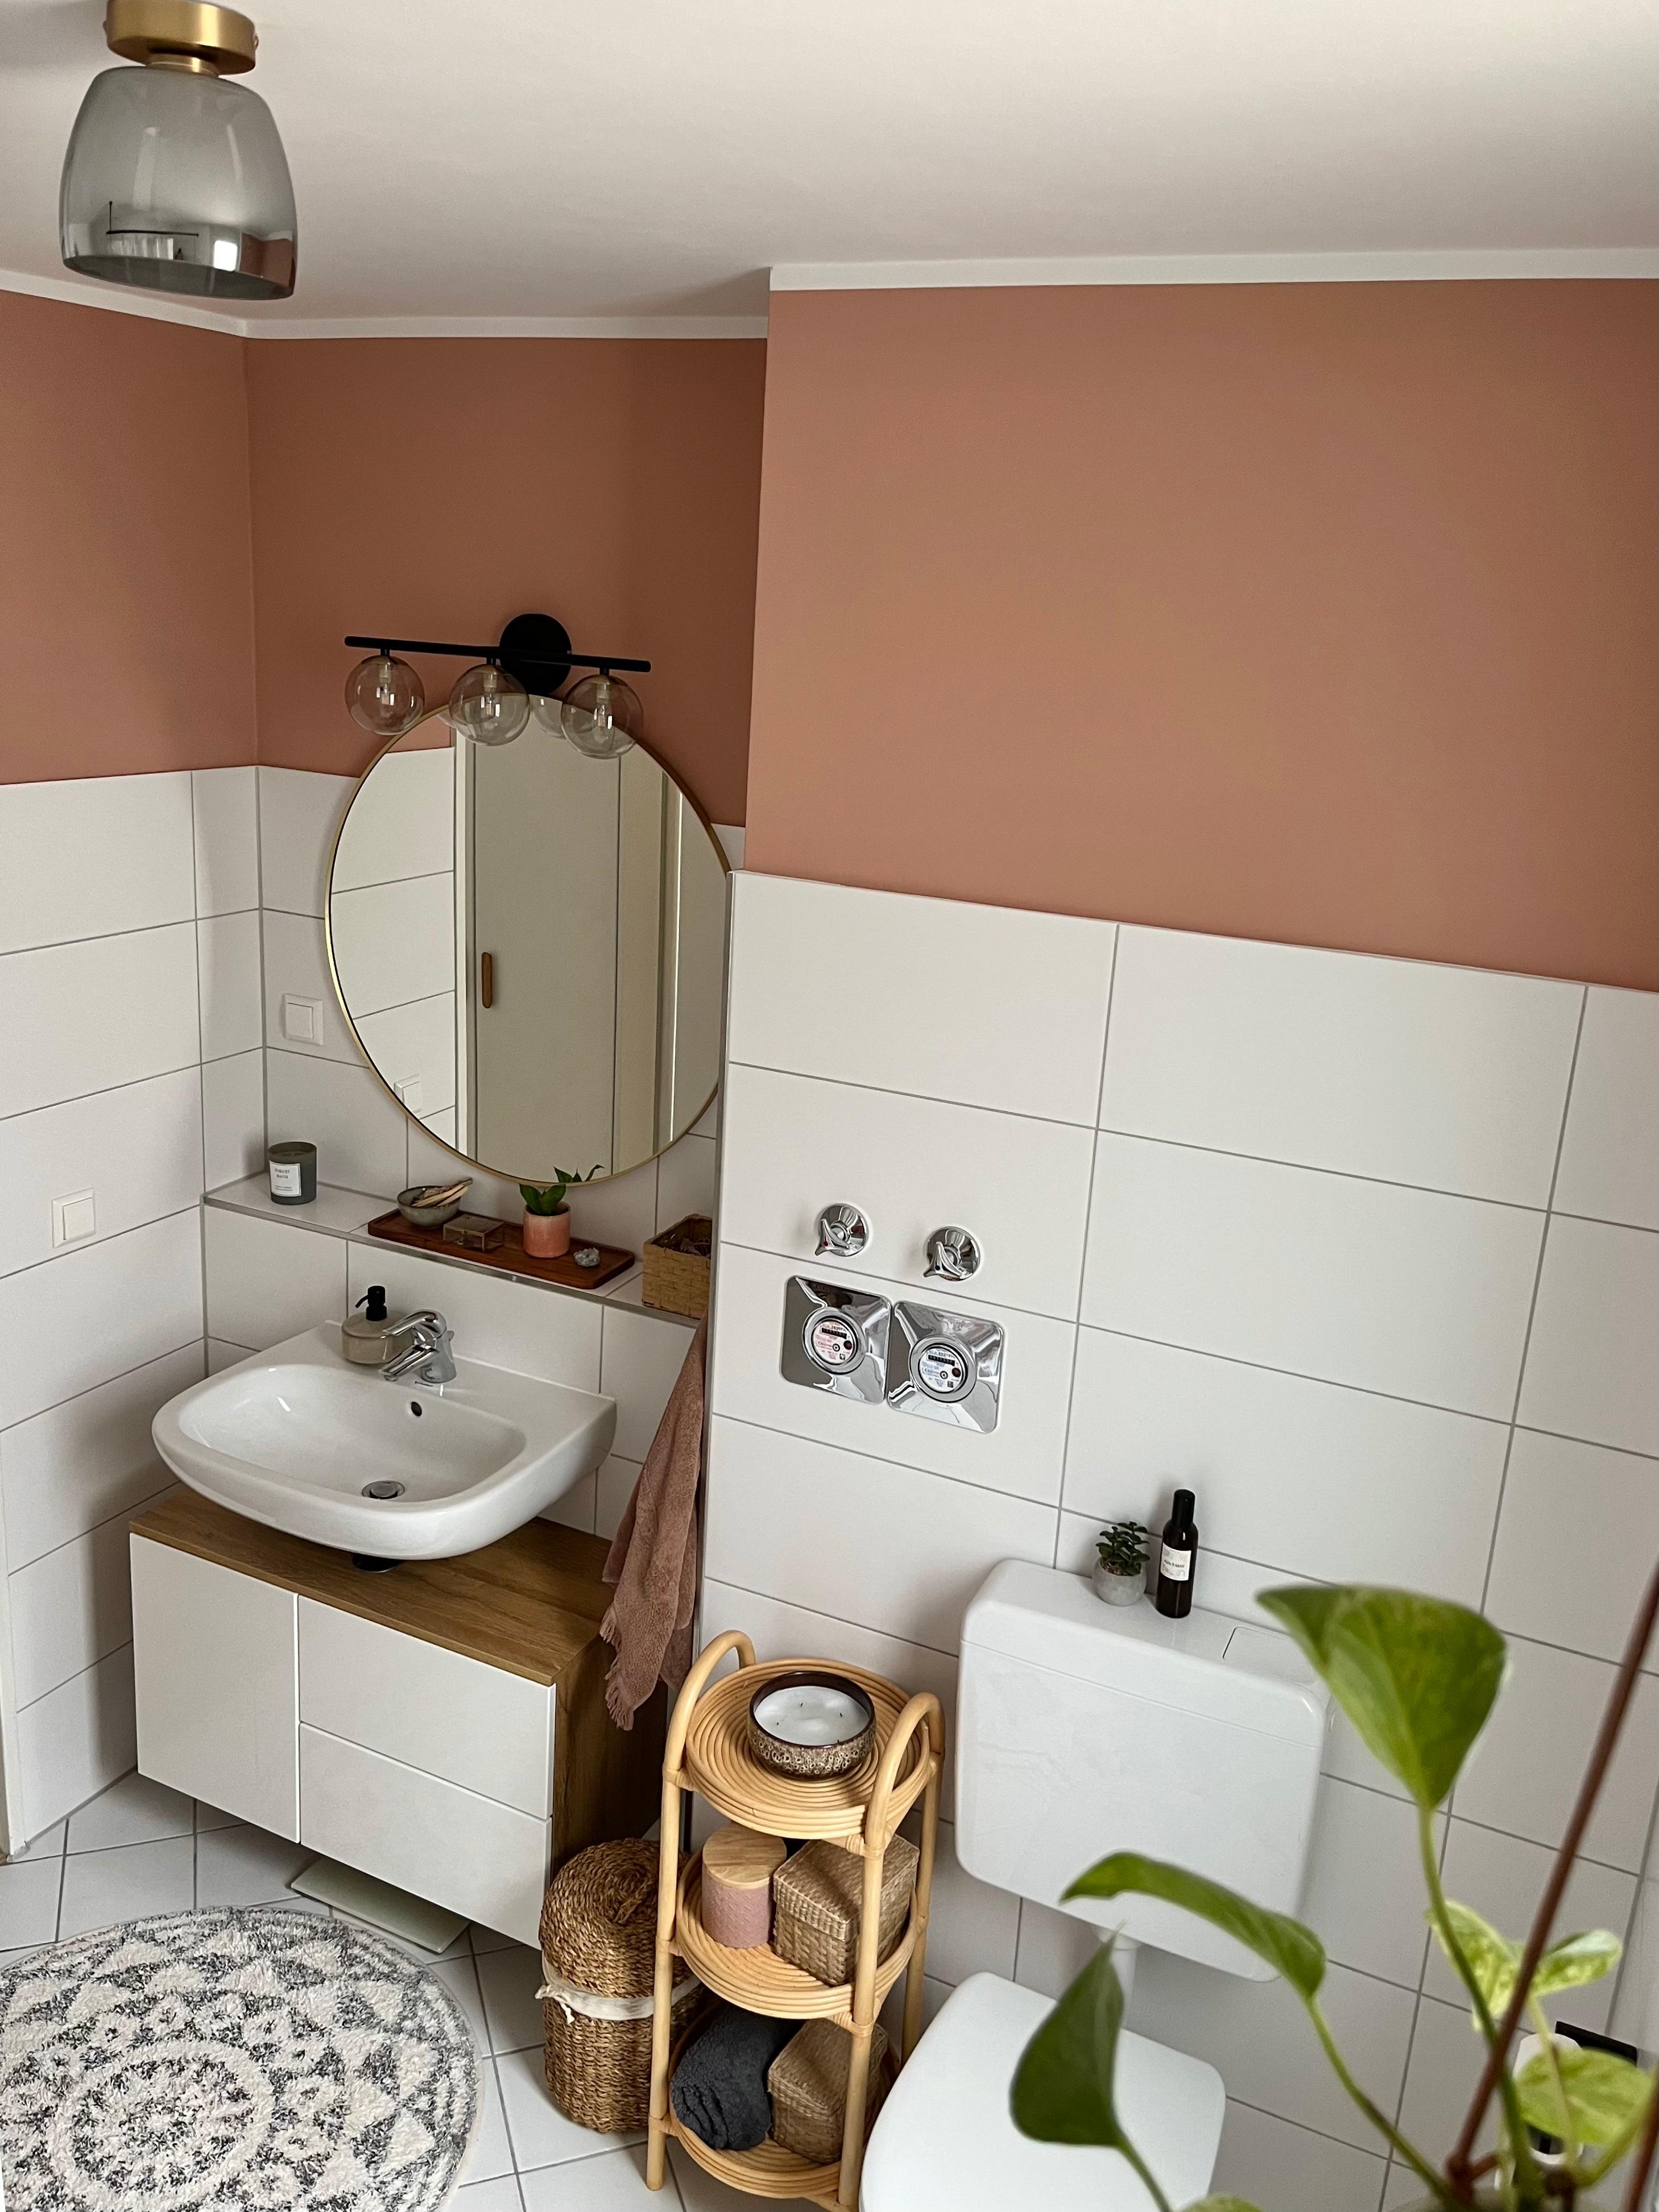 Trendfarbe Marokko von Schöner Wohnen 😍 Macht das Bad direkt wohnlicher 🙌 #mietwohnung #badezimmer #wandfarbe